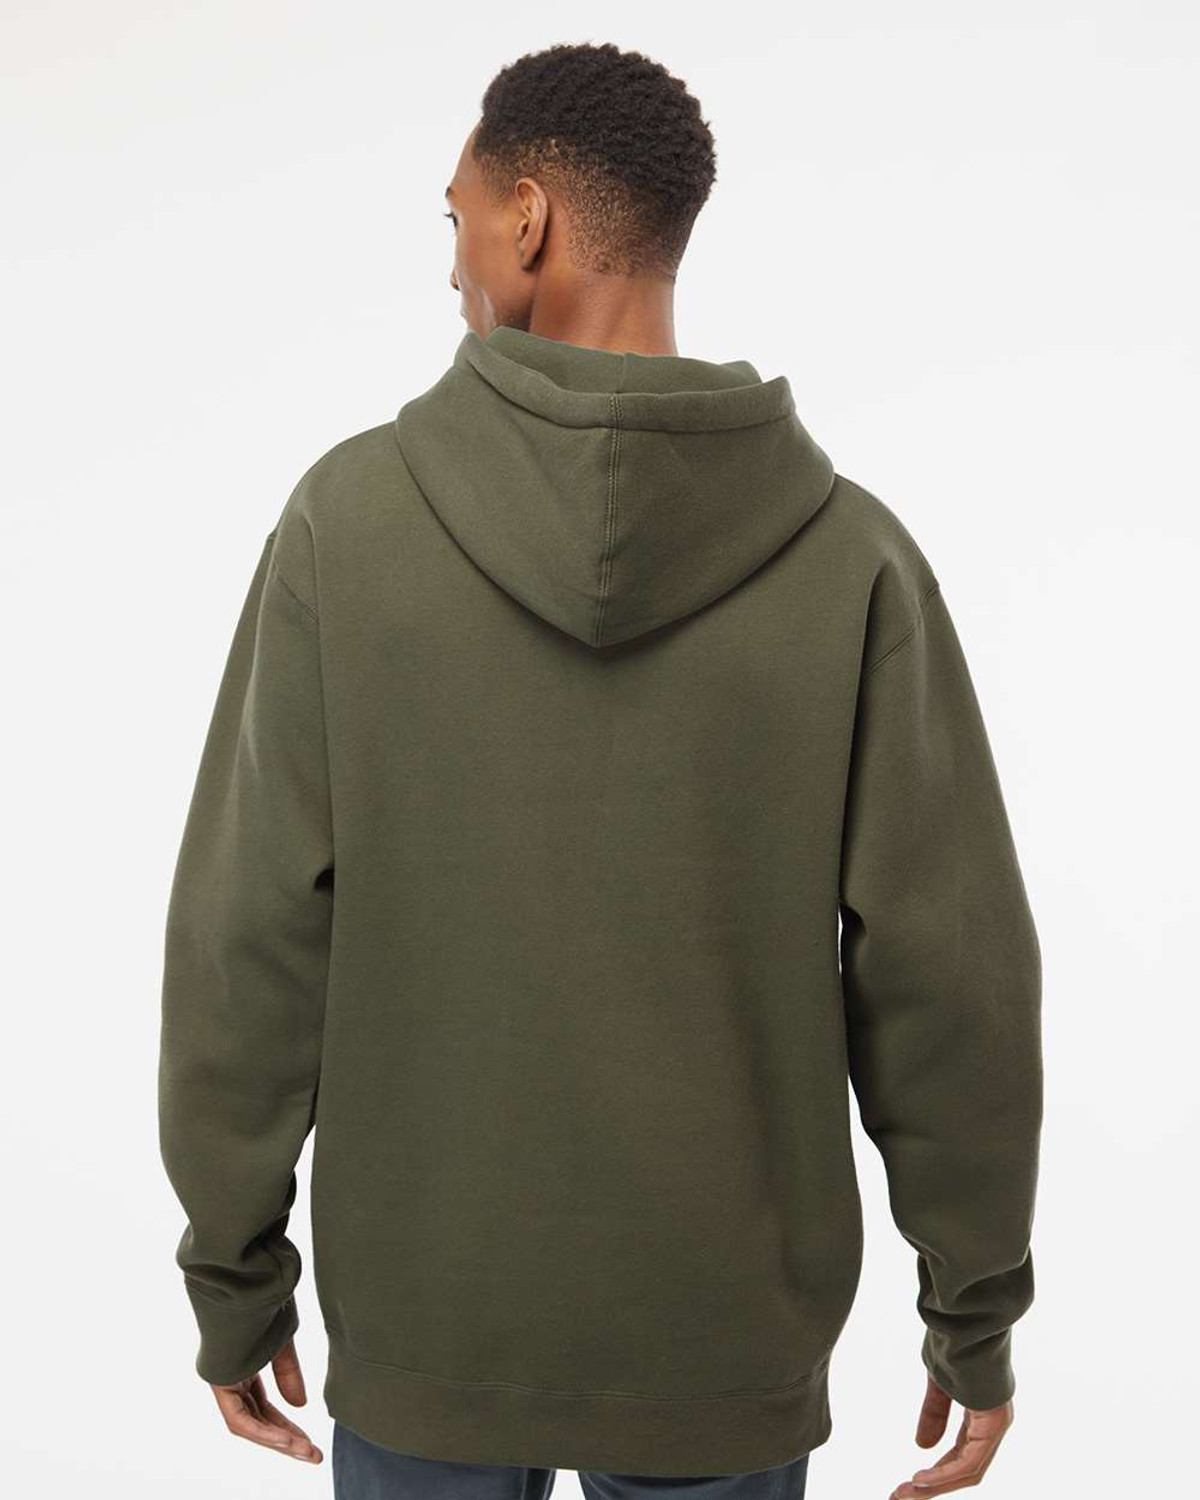 Sweatshirt : Hoodie 100% Cotton Premium Blend Fleece, S-4XL